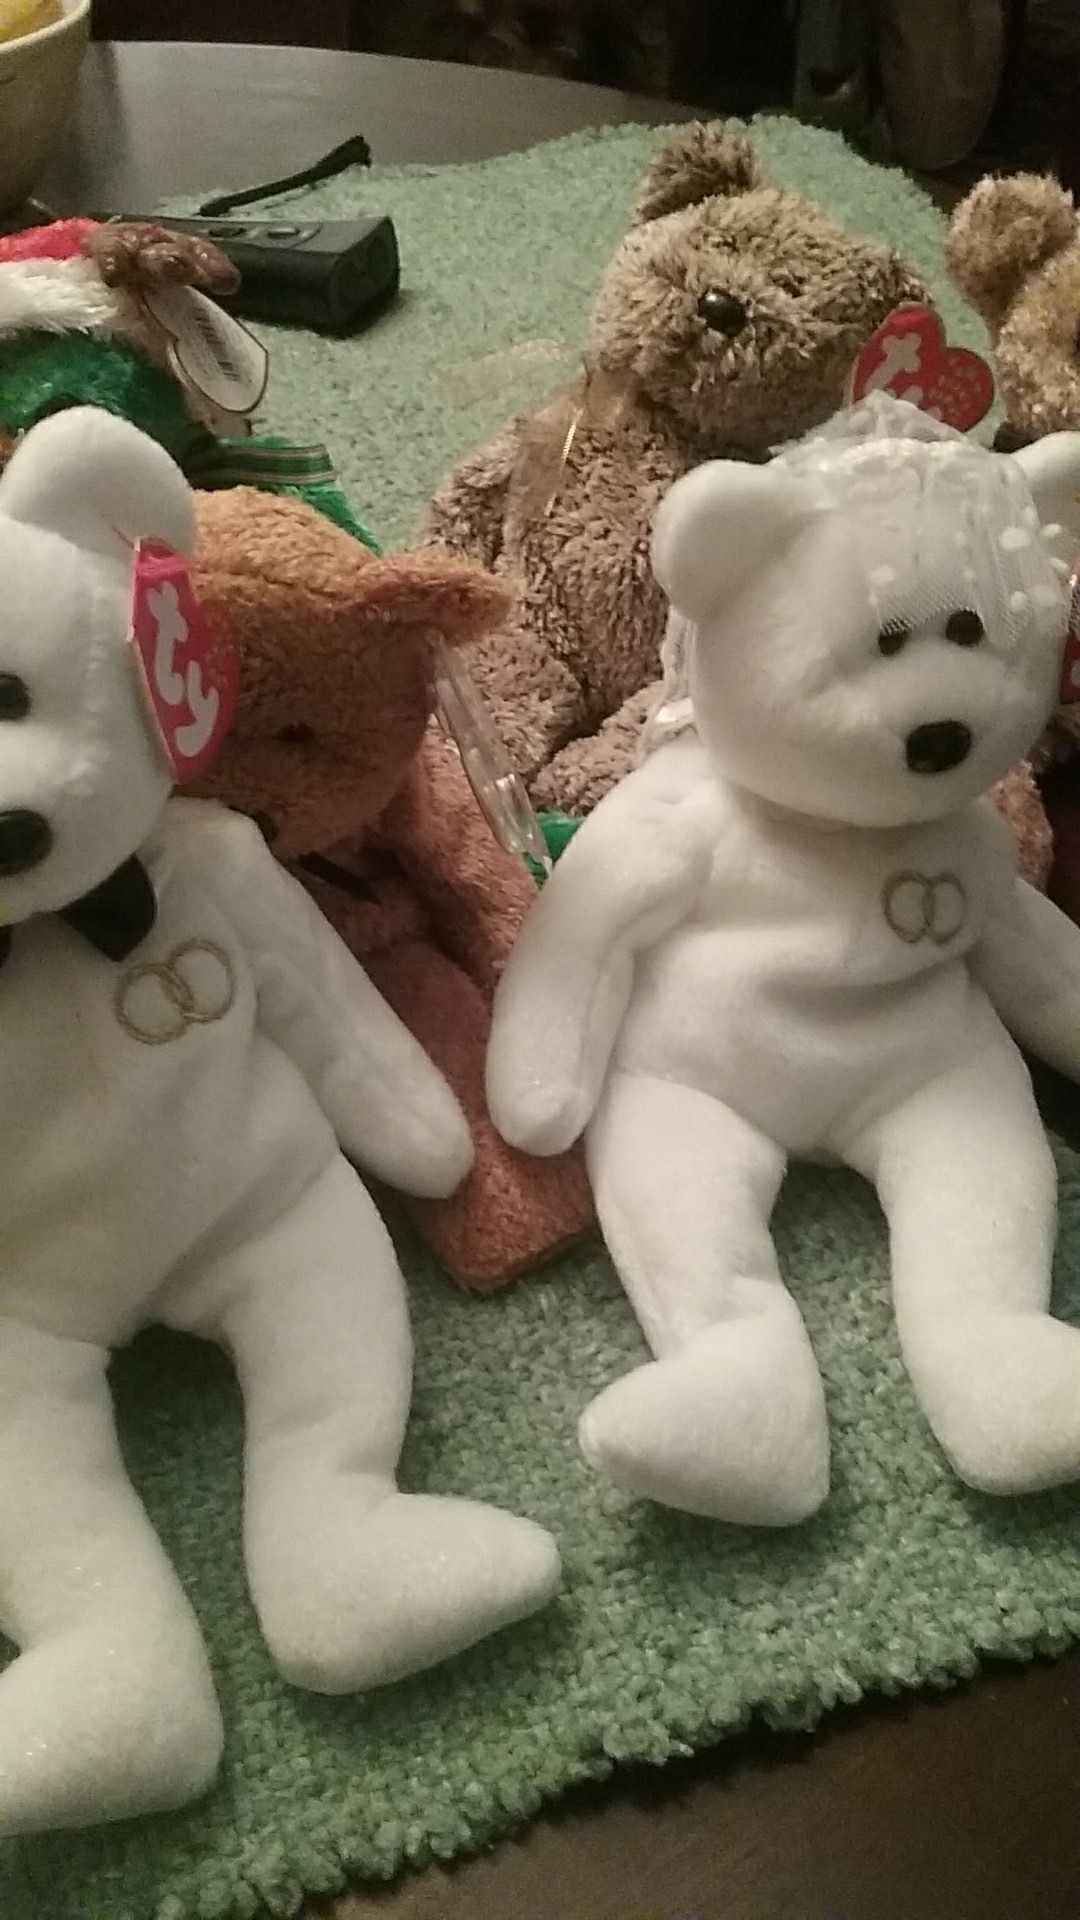 Beanie babies ,Santa, bride and groom ,happy holidays usa2002 fifa,pops,Harry, 2001holiday teddy,2002 signature bear.